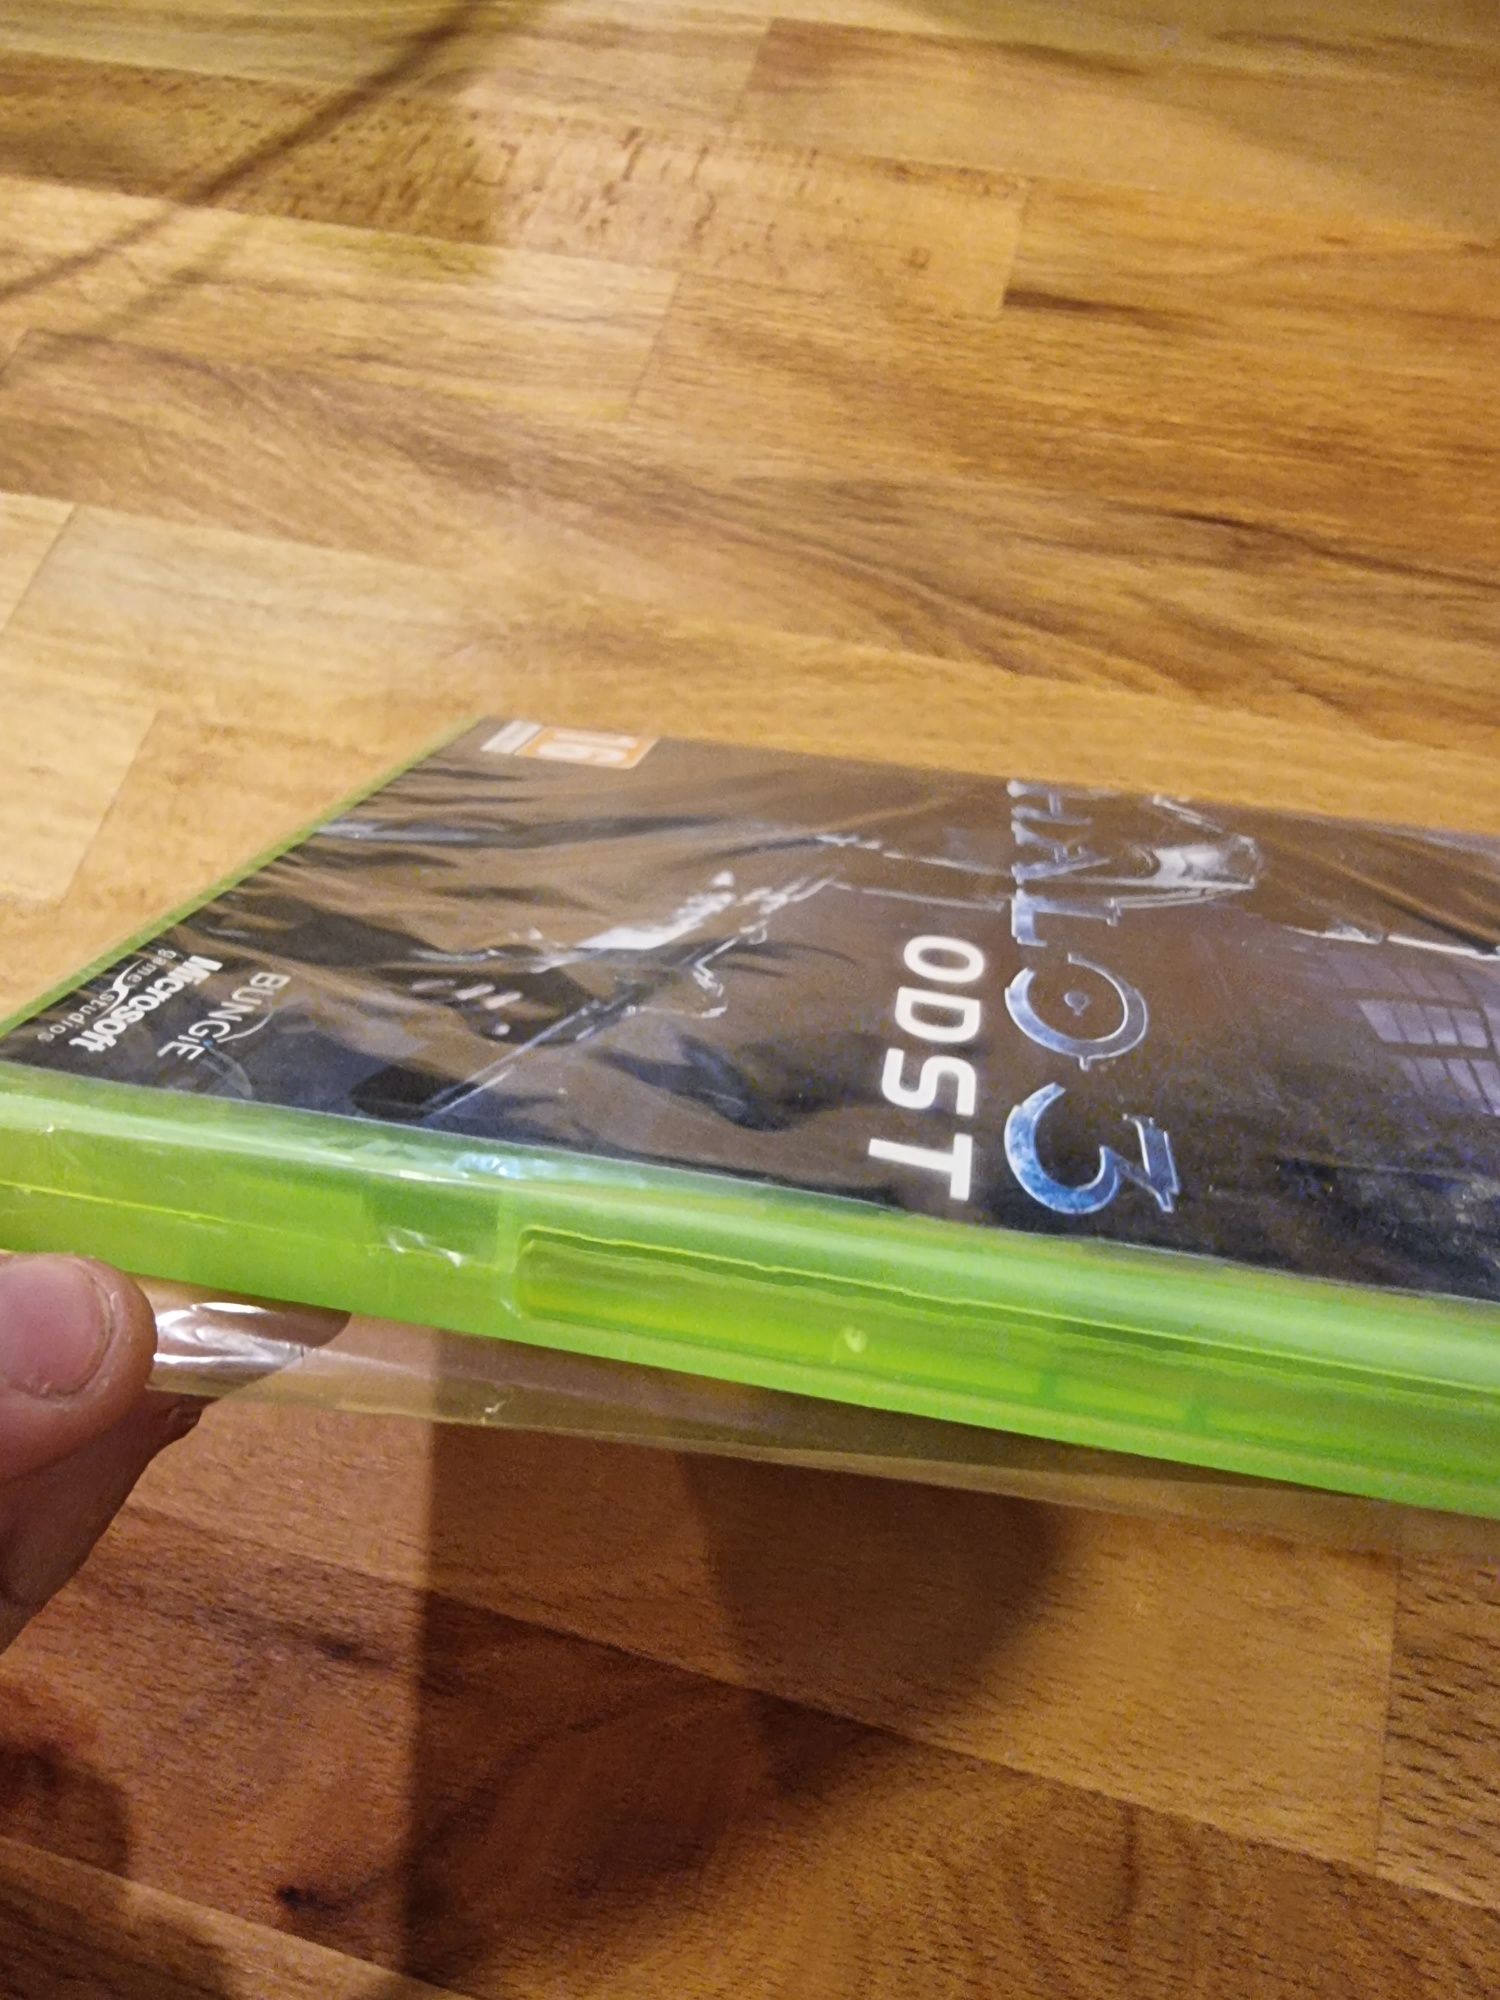 Halo 3 Odst Xbox 360 Nowa w folii